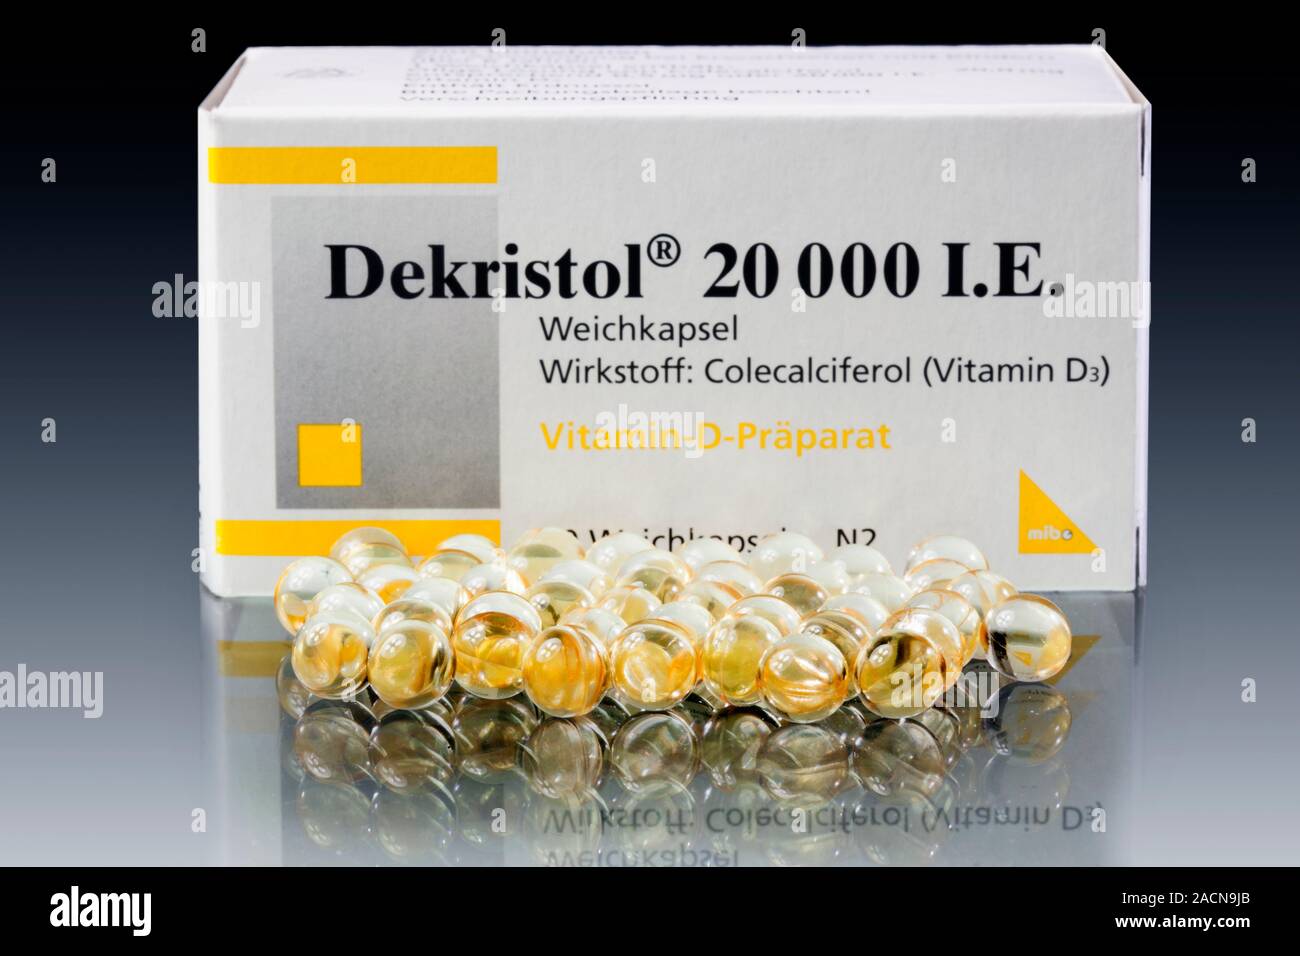 Vitamin-D-Präparate. Box und Kapseln von Dekistrol kapseln. Dekistrol ist  ein Vitamin D3 (Cholecalciferol) ergänzen. Vitamin D ist in Nahrungsmitteln  gefunden Suc Stockfotografie - Alamy